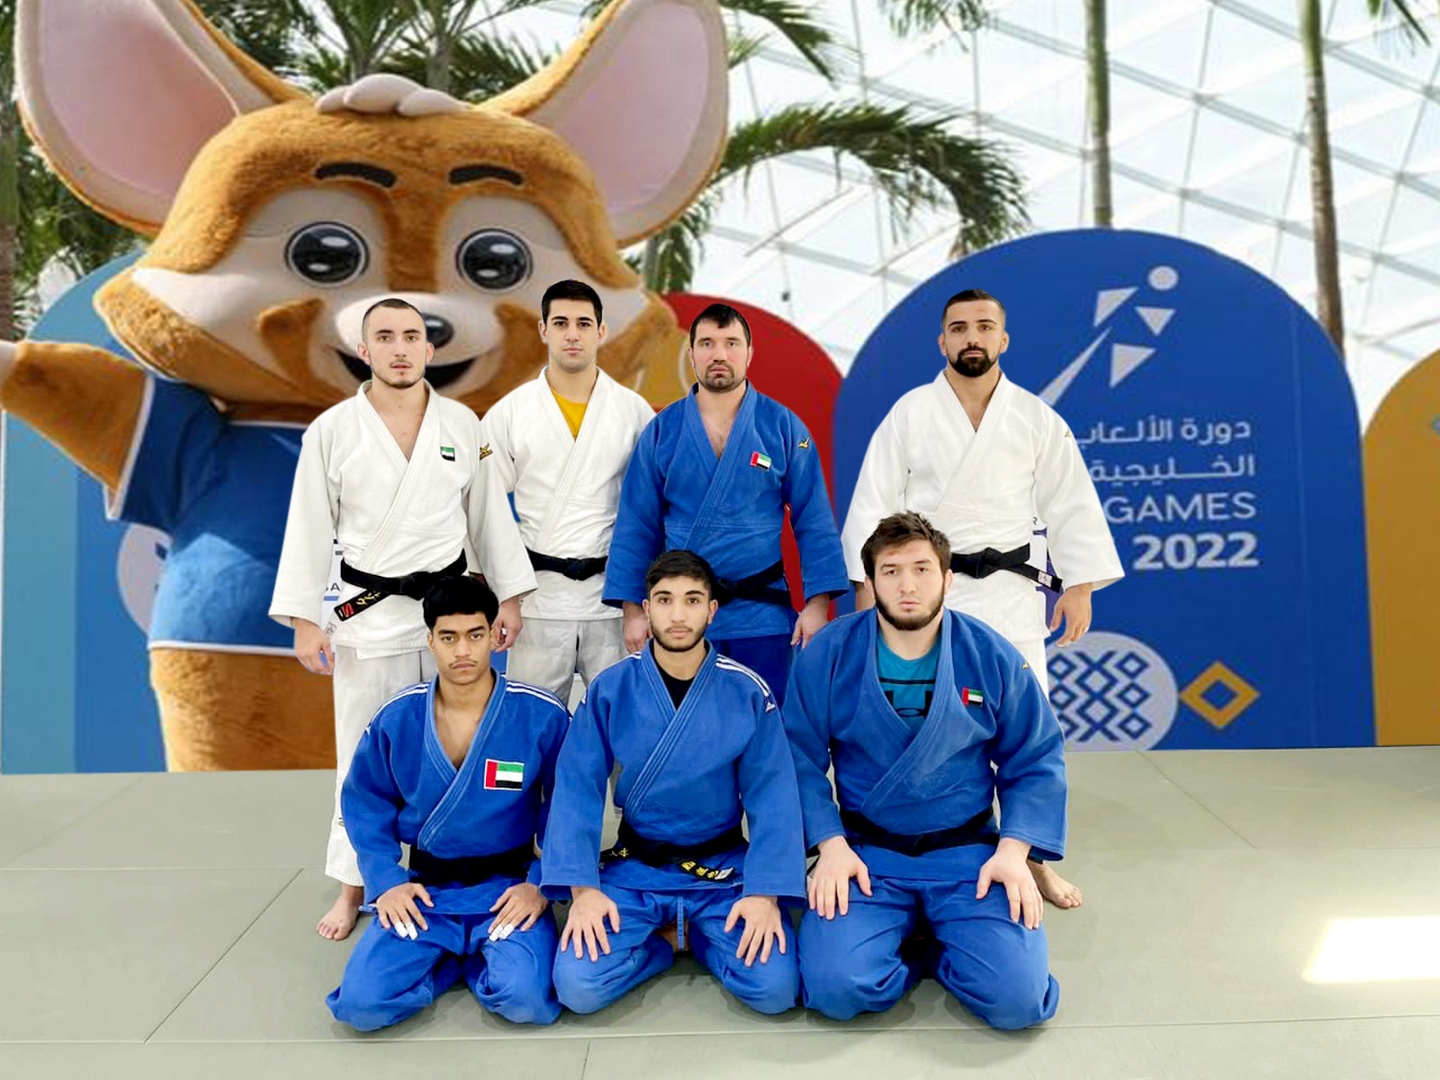 وصول منتخب الجودو للكويت استعداداً للمشاركة في دورة الألعاب الخليجية لعام 2022